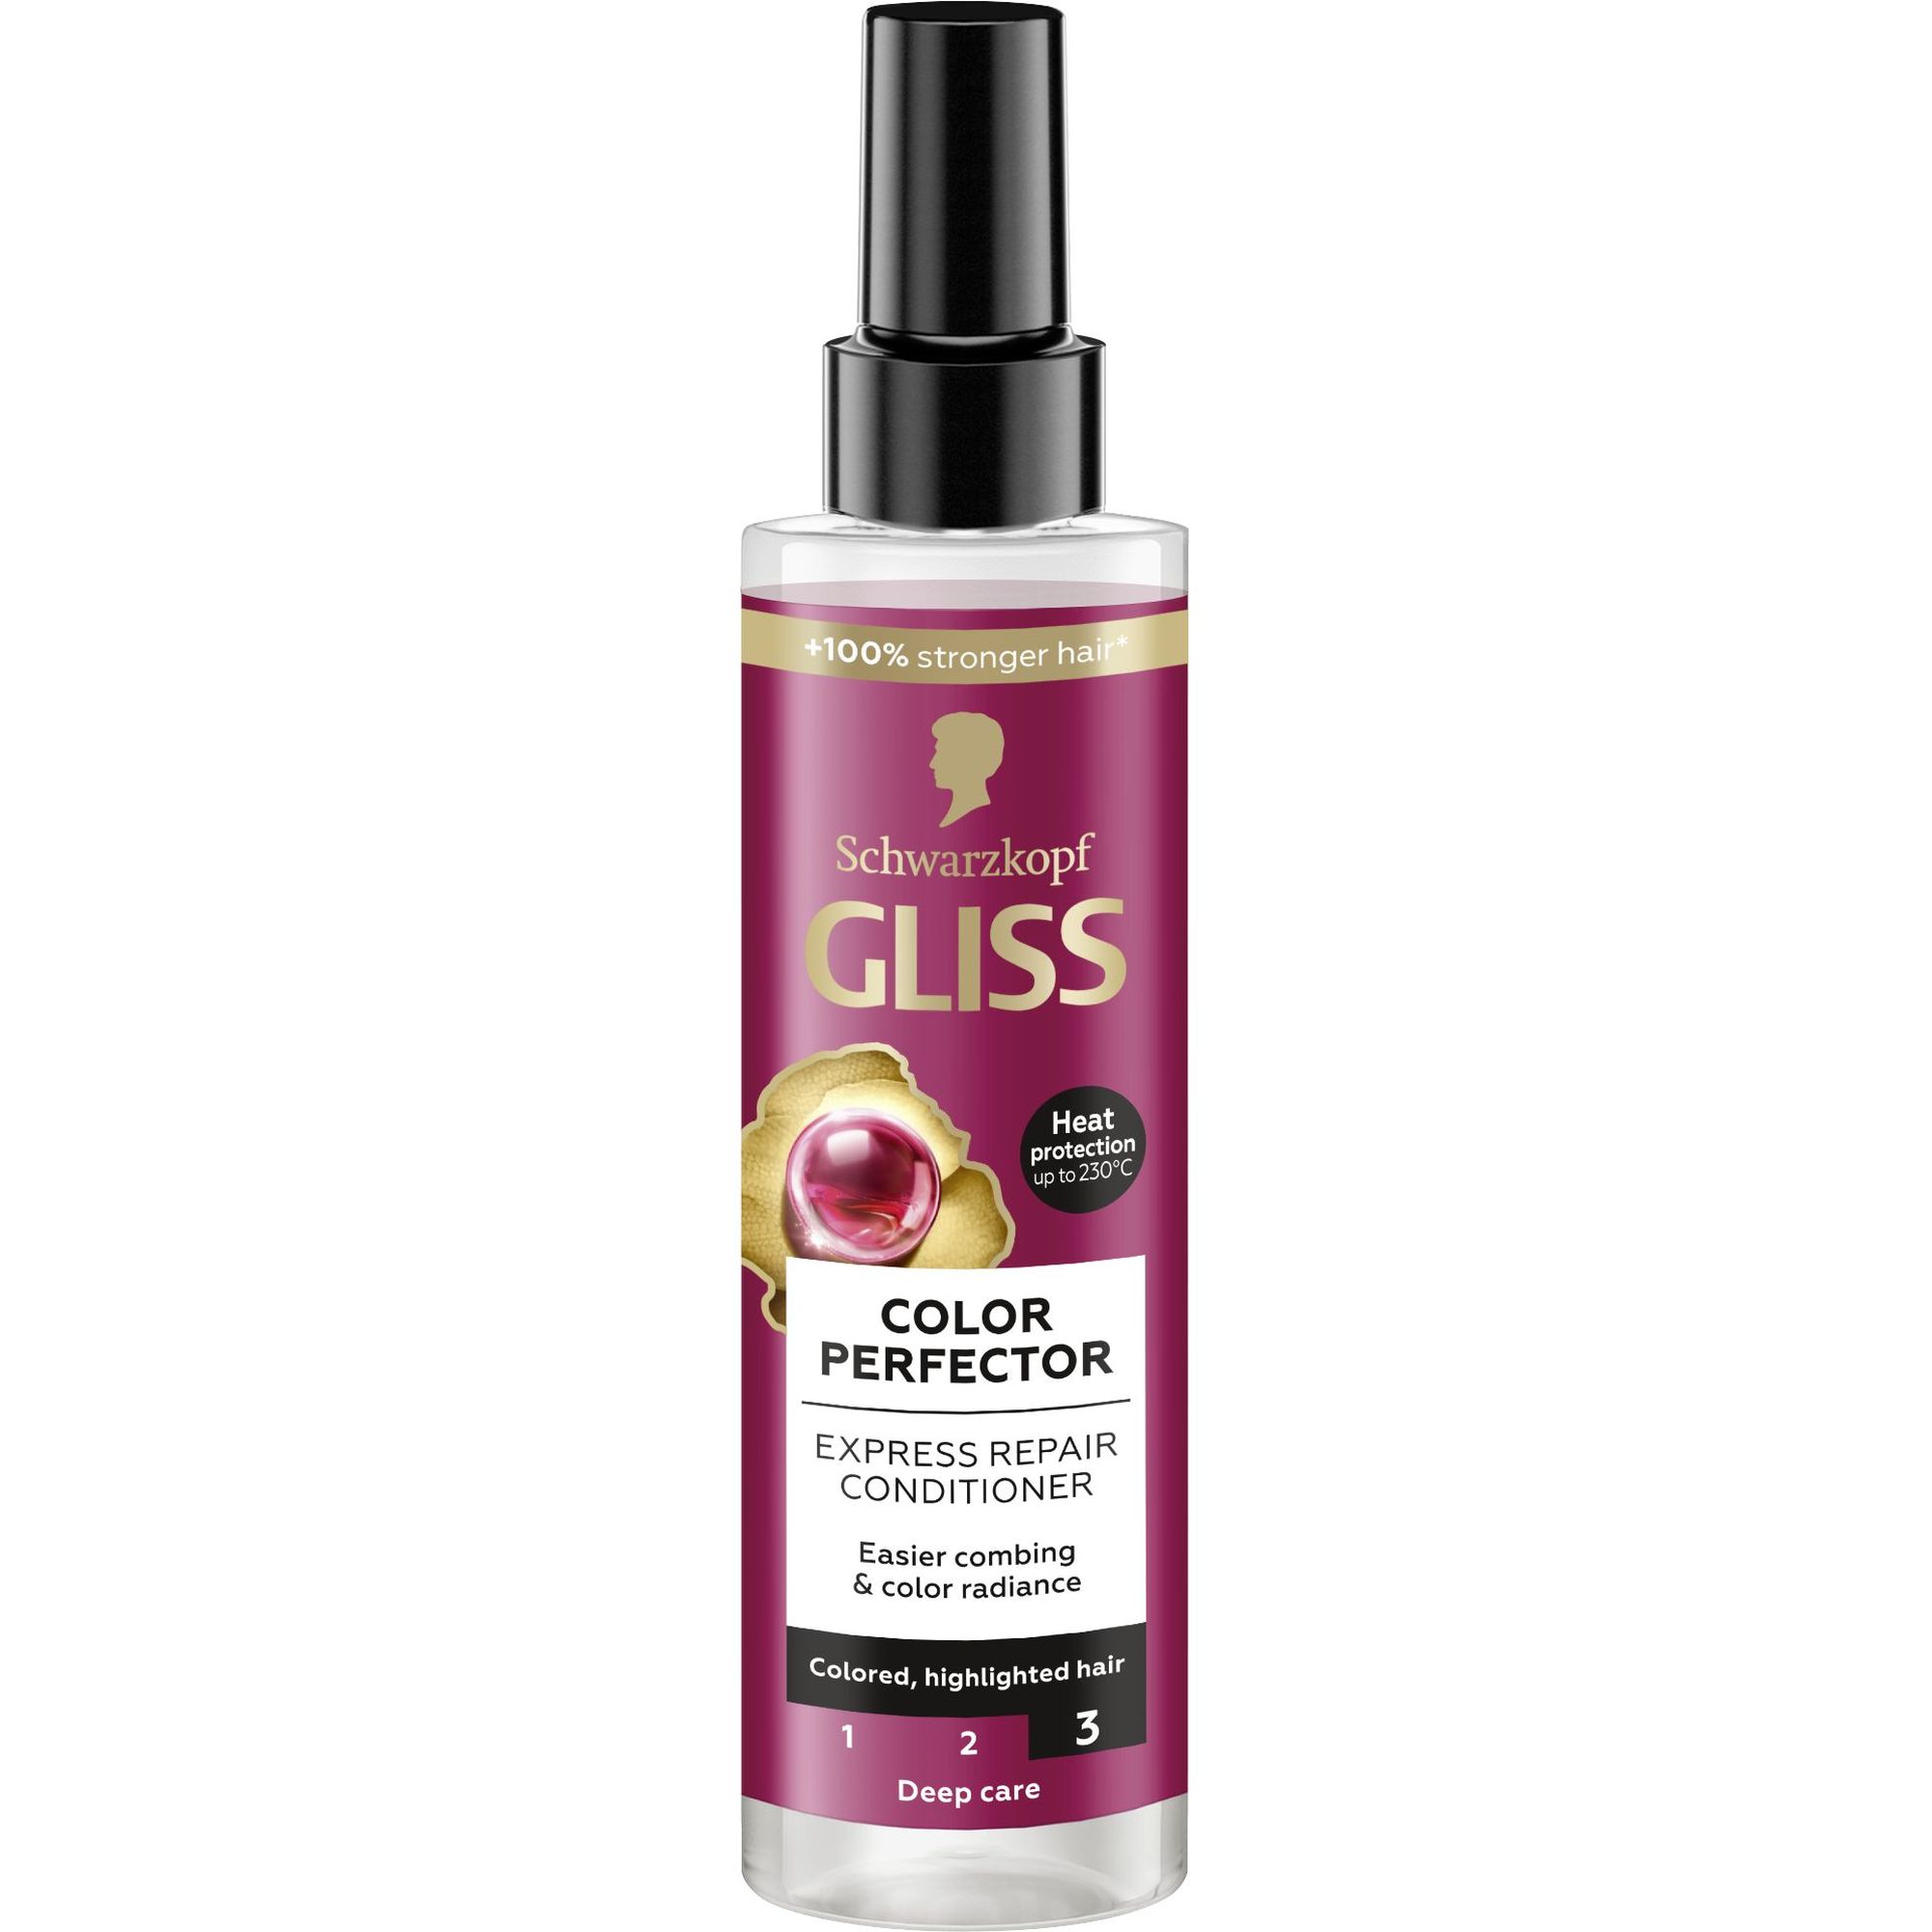 Експрес-кондиціонер Gliss Сolor Perfector для фарбованого, мелірованого волосся 200 мл - фото 1